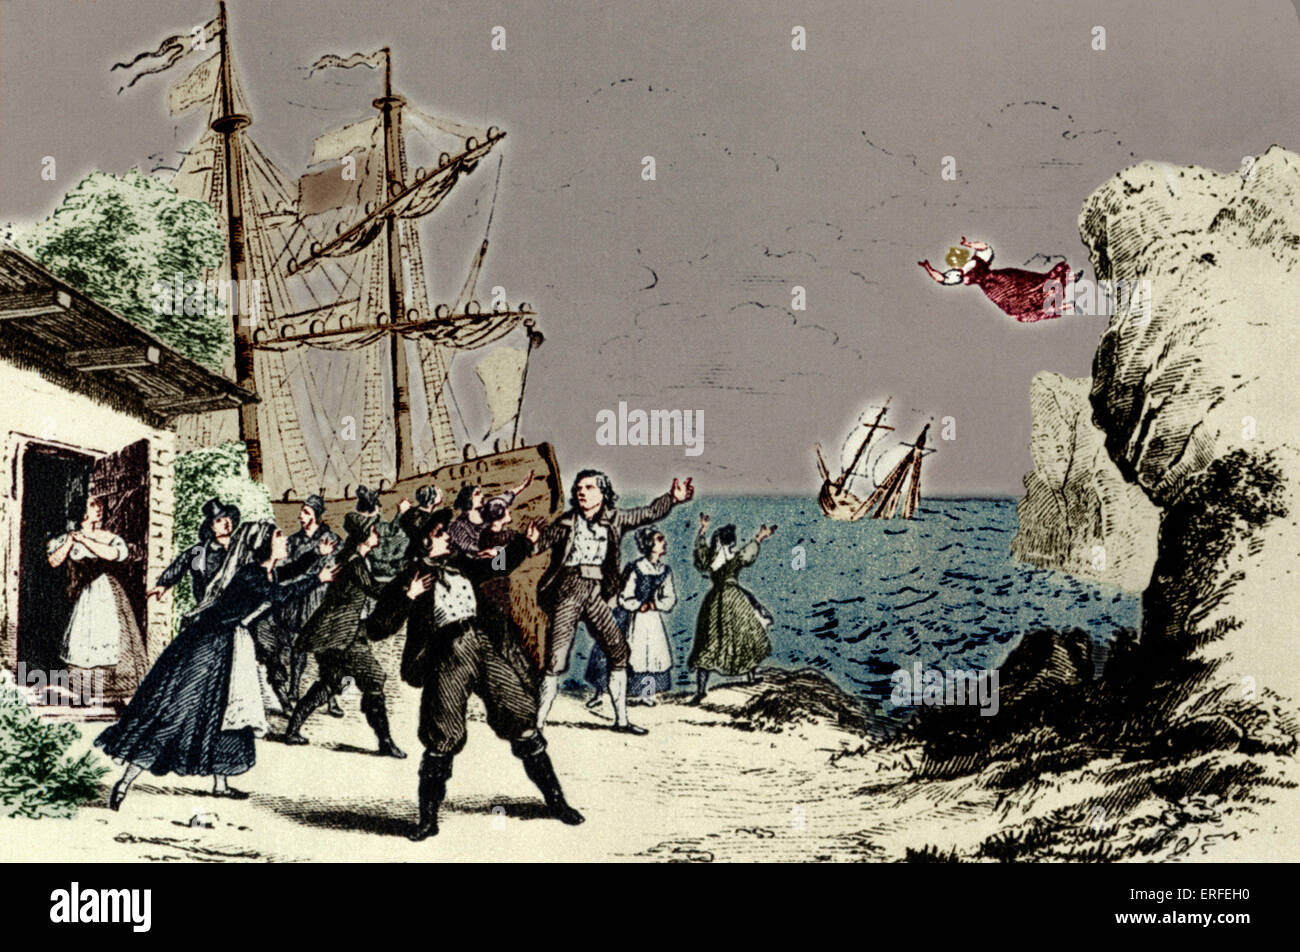 L'opéra de Richard Wagner "Le hollandais volant" (Der Fliegende Höllander). Scène illustrée montrant Senta sautant à l'Aéro Banque D'Images